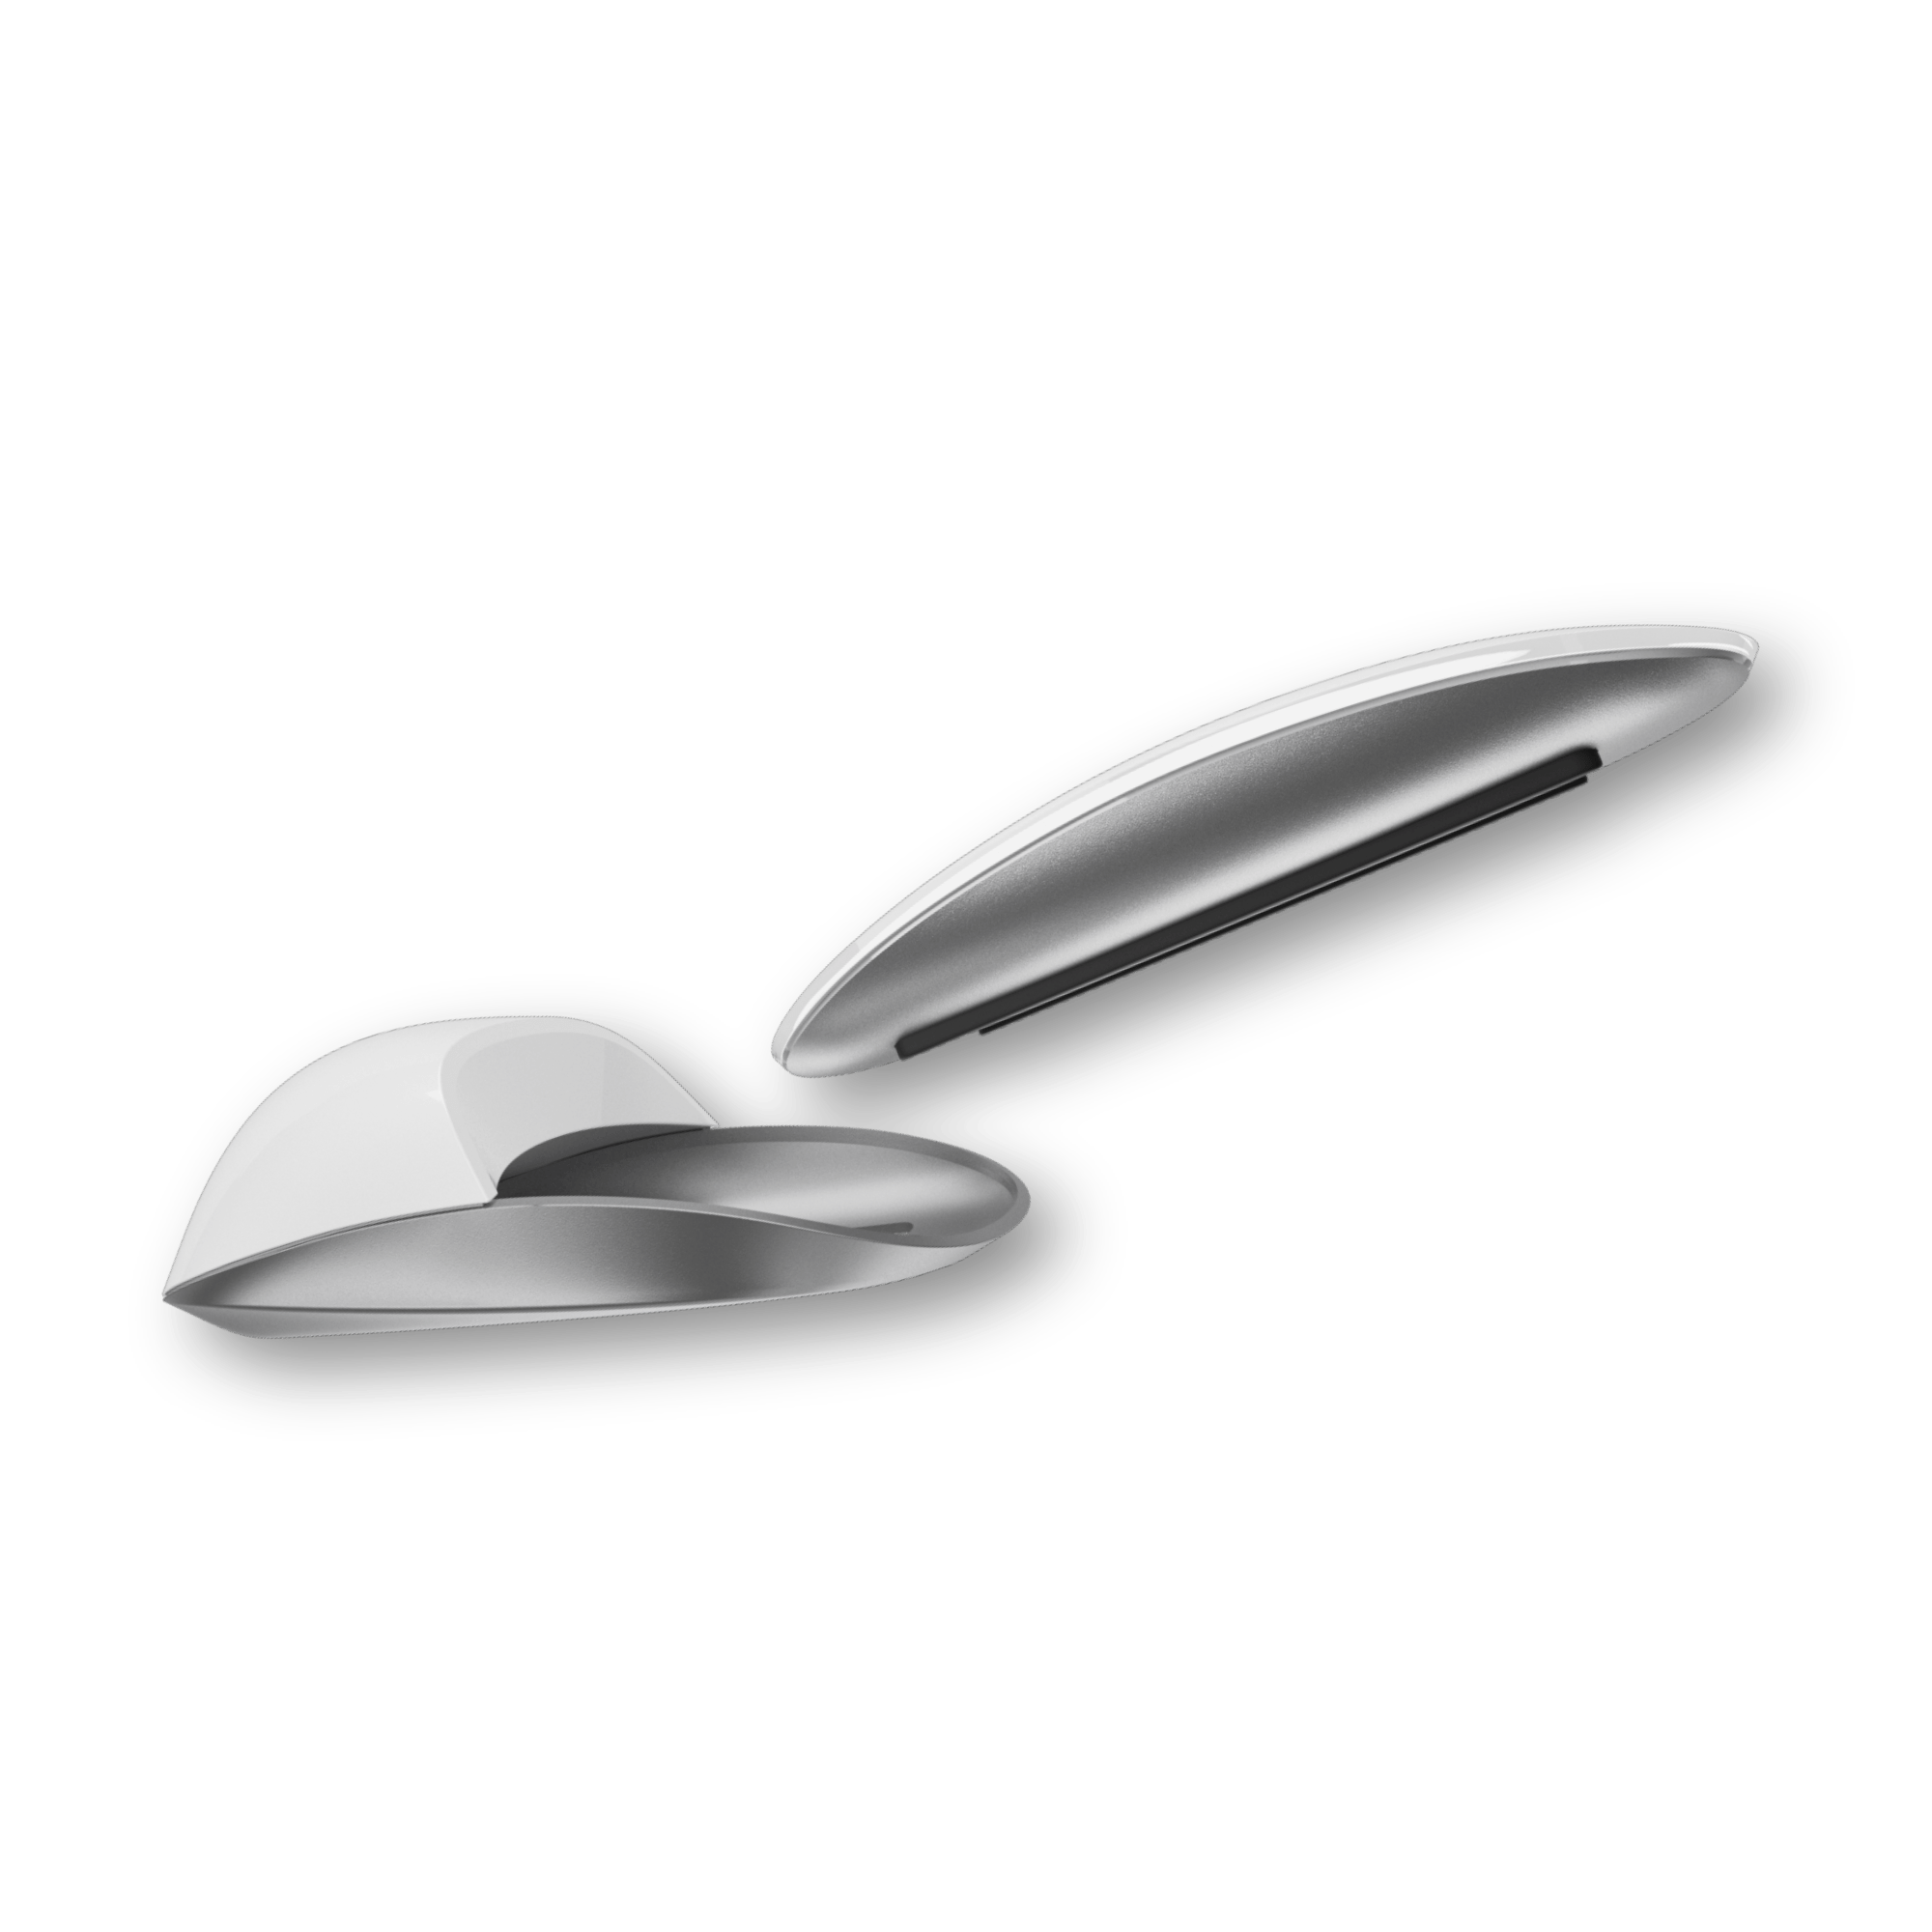 Solumics.Case - La mejora ergonómica para el ratón de tu iMac